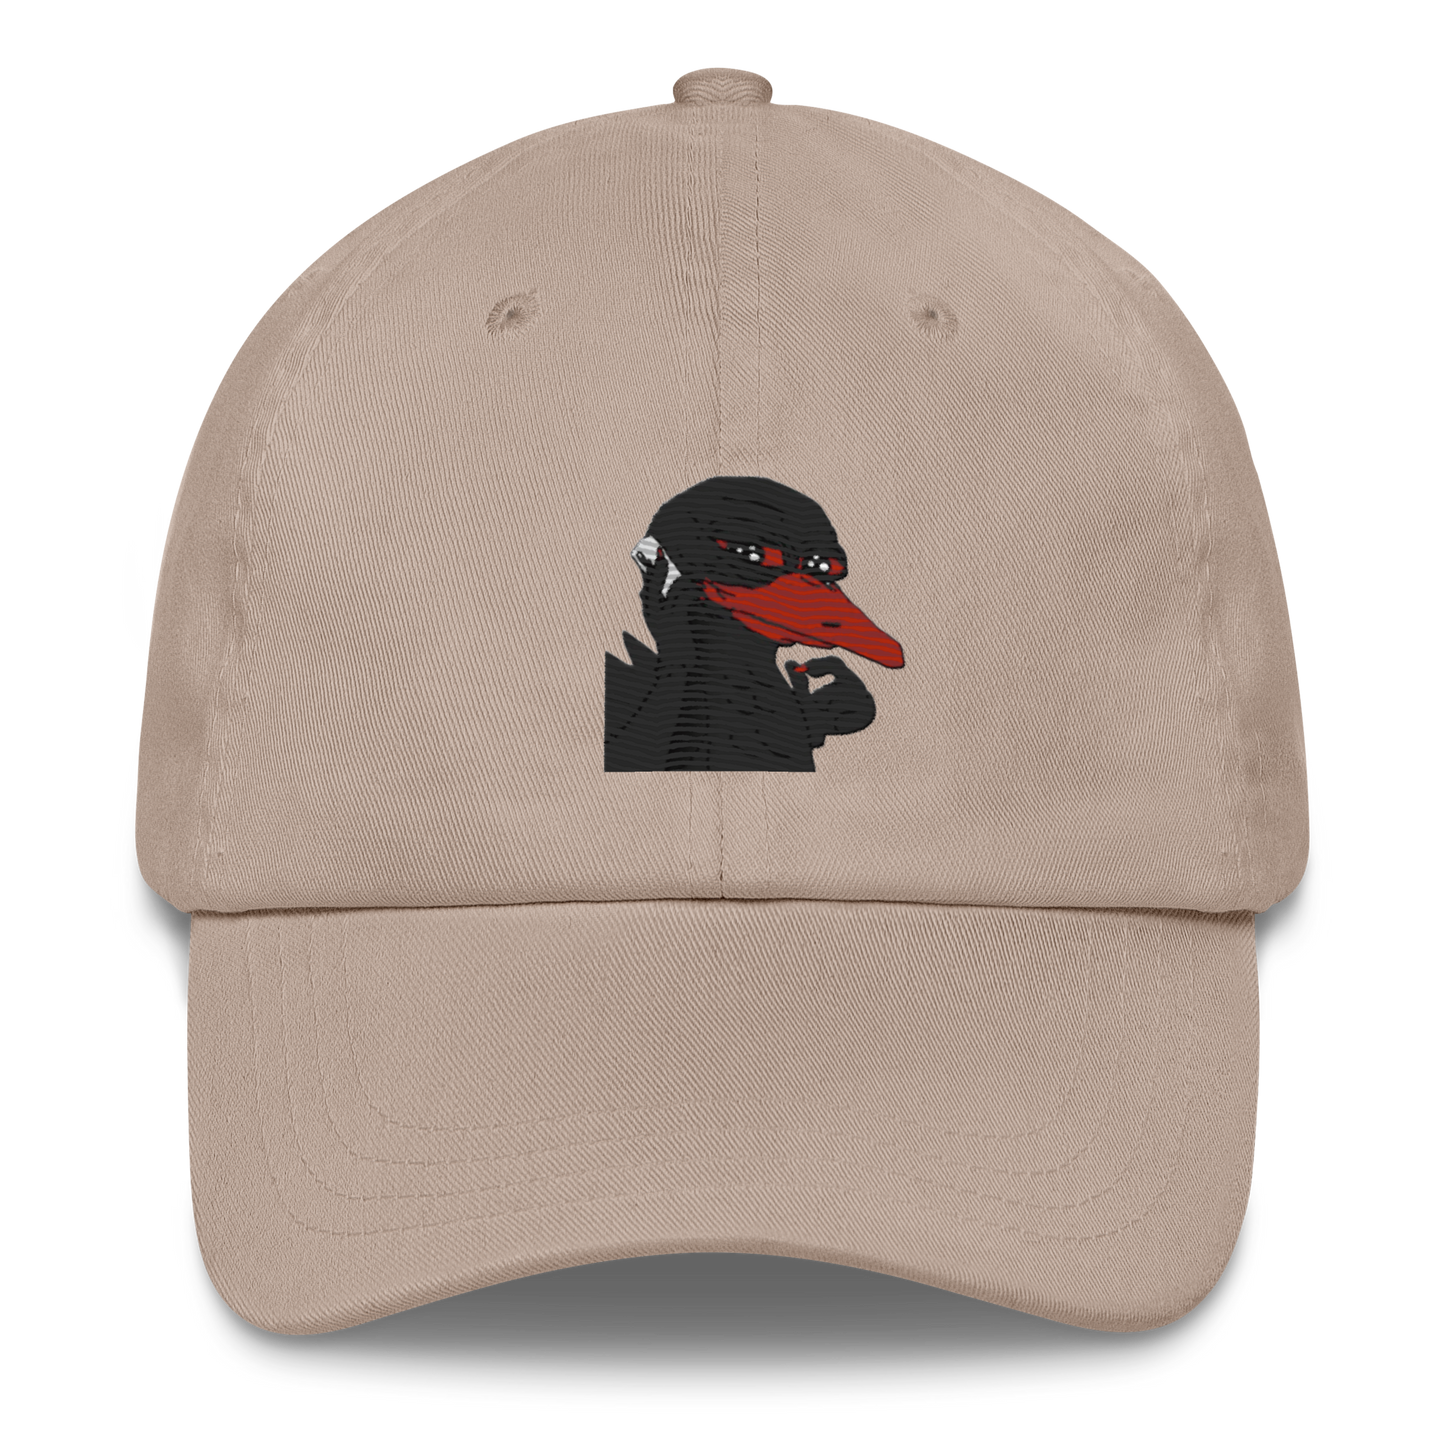 $dodo hat